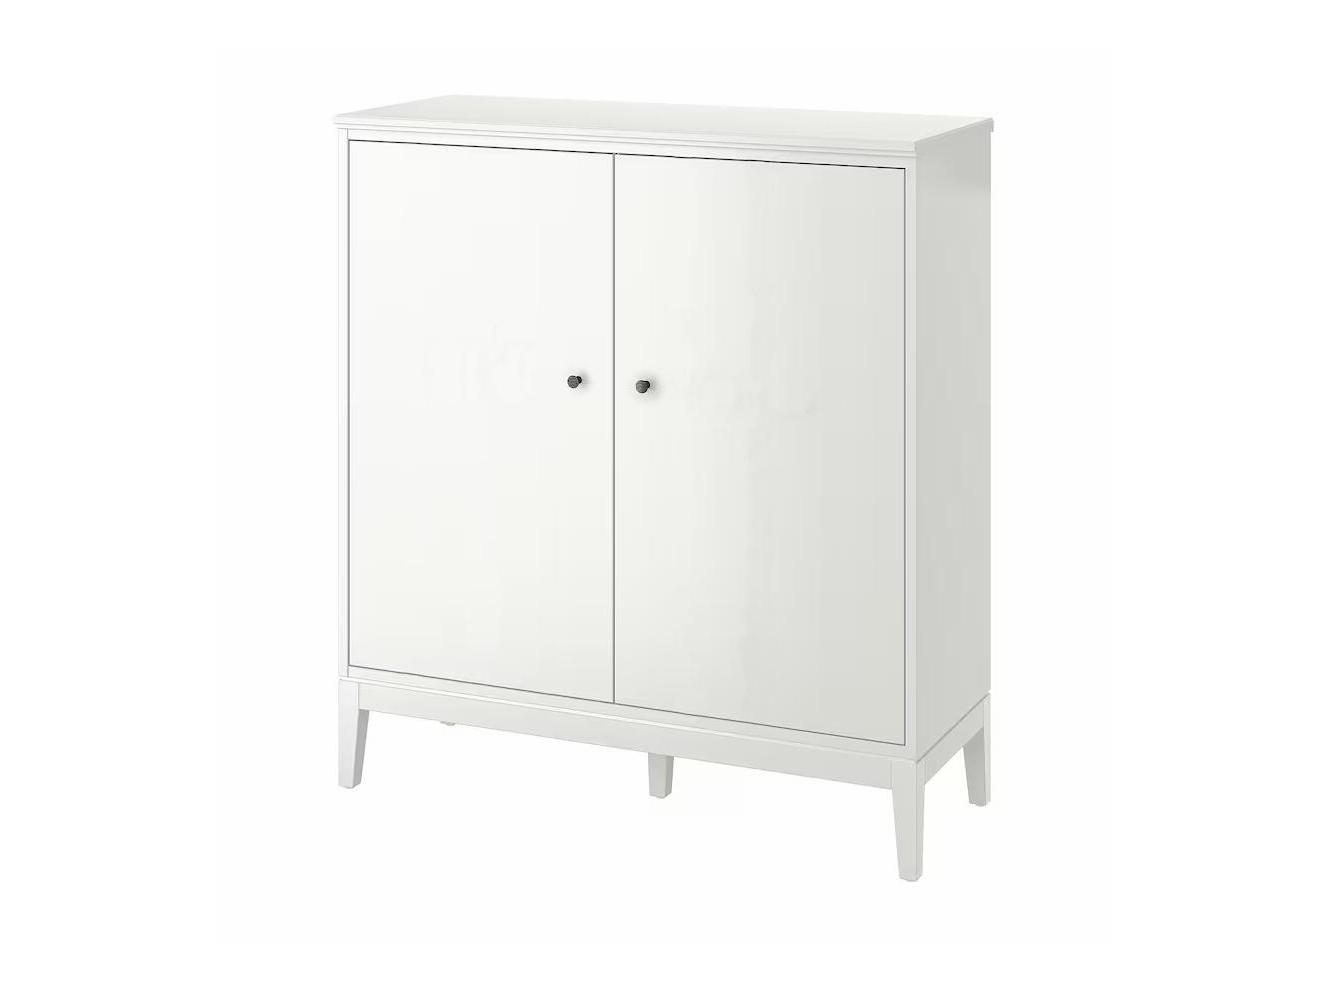 Распашной шкаф Иданас 15 white ИКЕА (IKEA) изображение товара